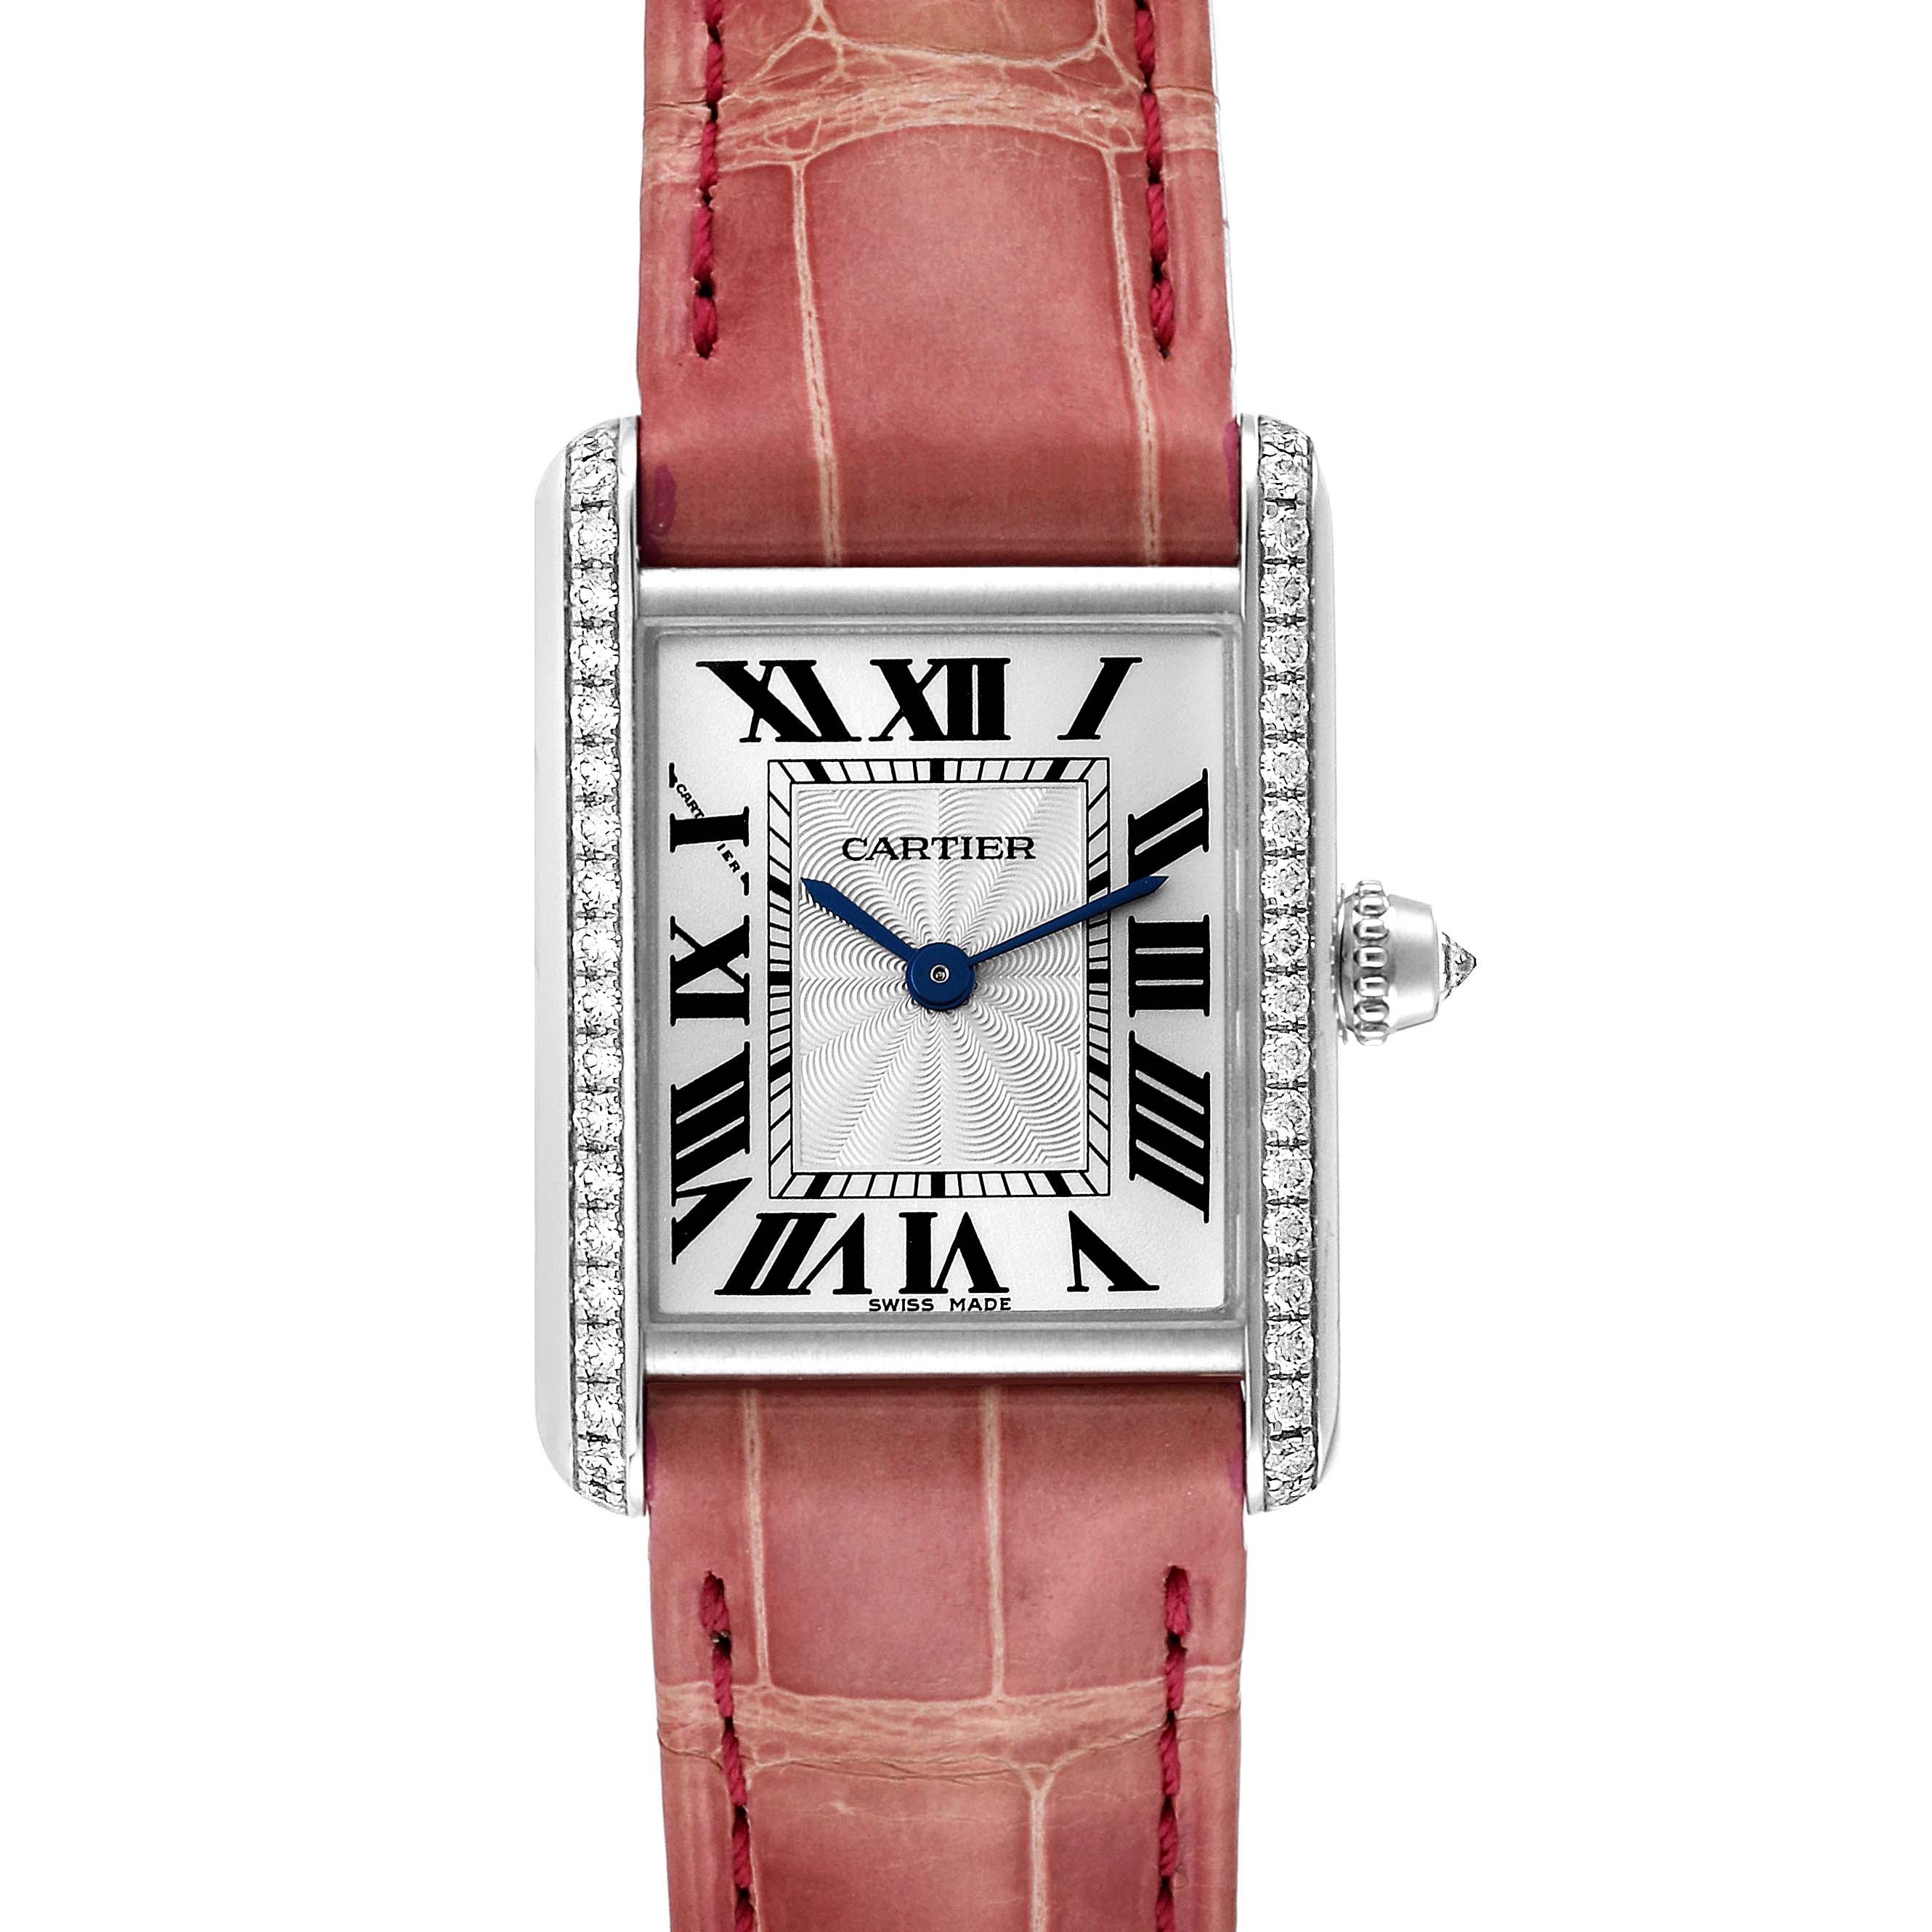 Cartier Tank Louis Small Silver Dial 18kt Rose Gold Women's Watch